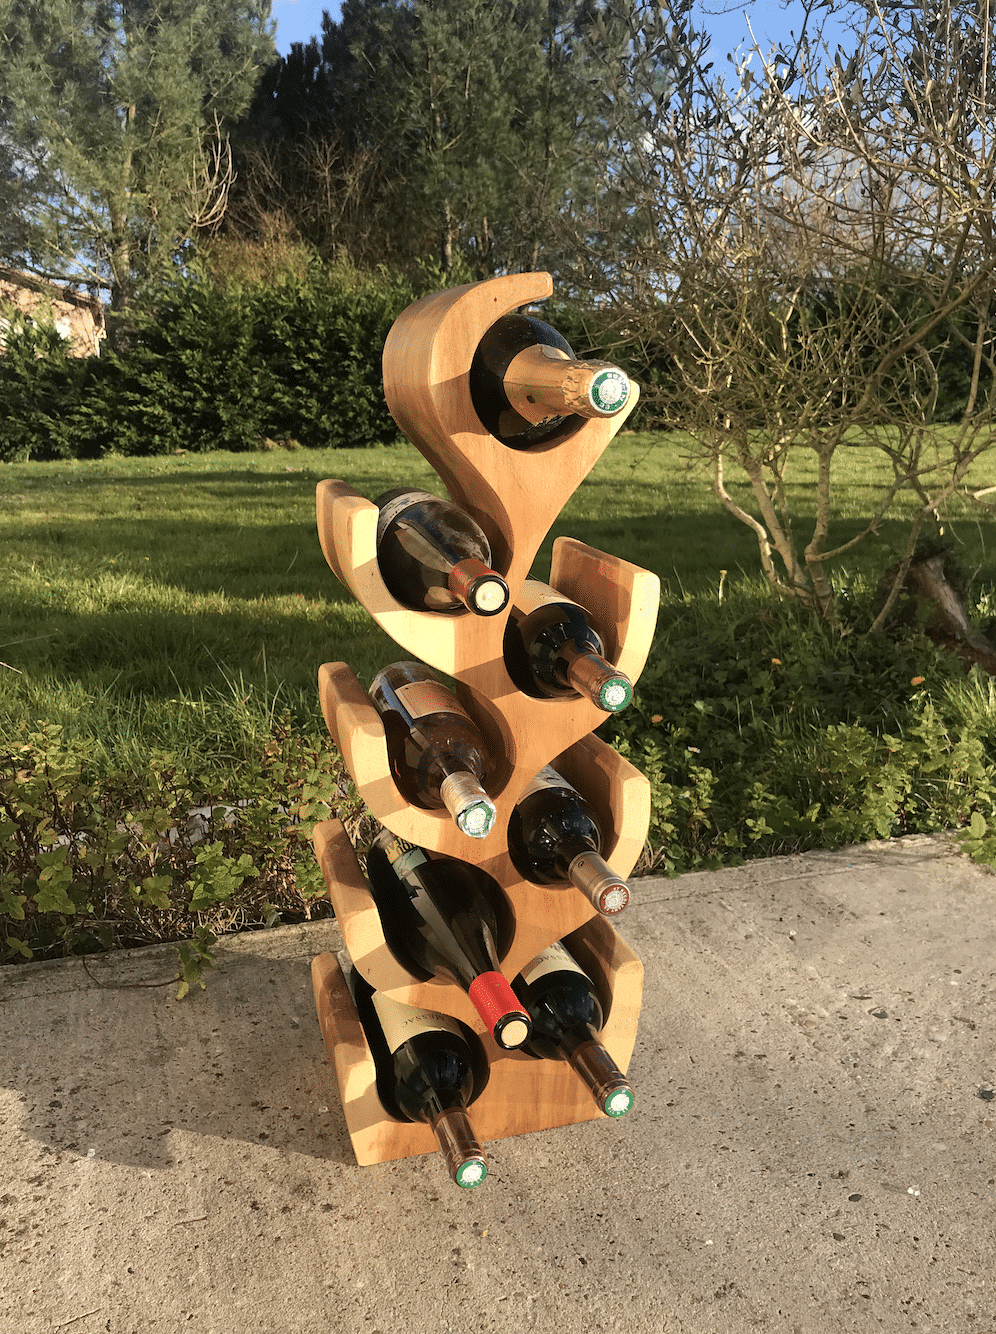 Rack Étagère Décoration Bouteilles de Vin en Bois Massif Suar 70cm